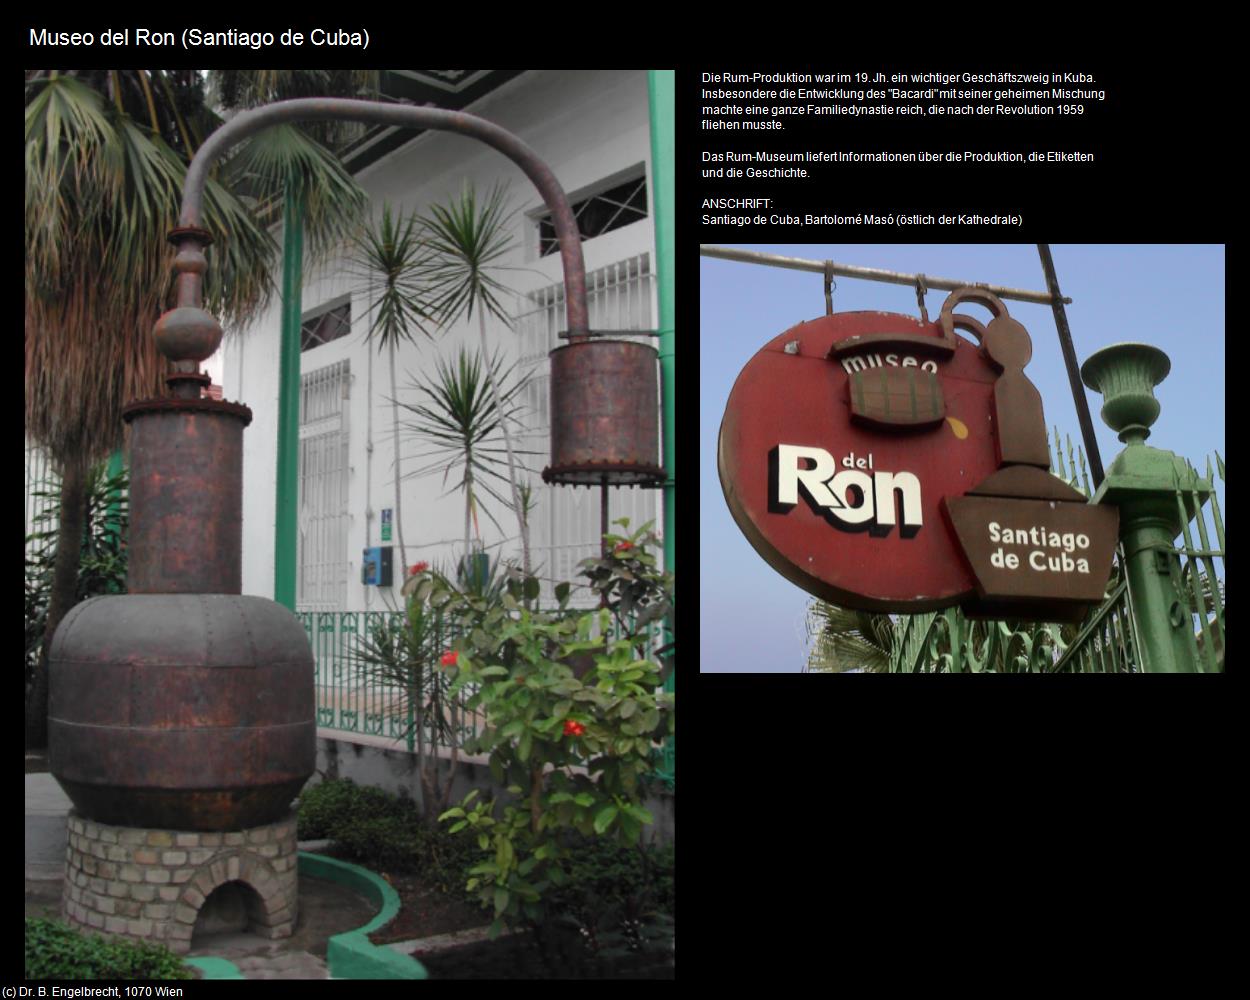 Museo del Ron (Santiago de Cuba) in KUBA